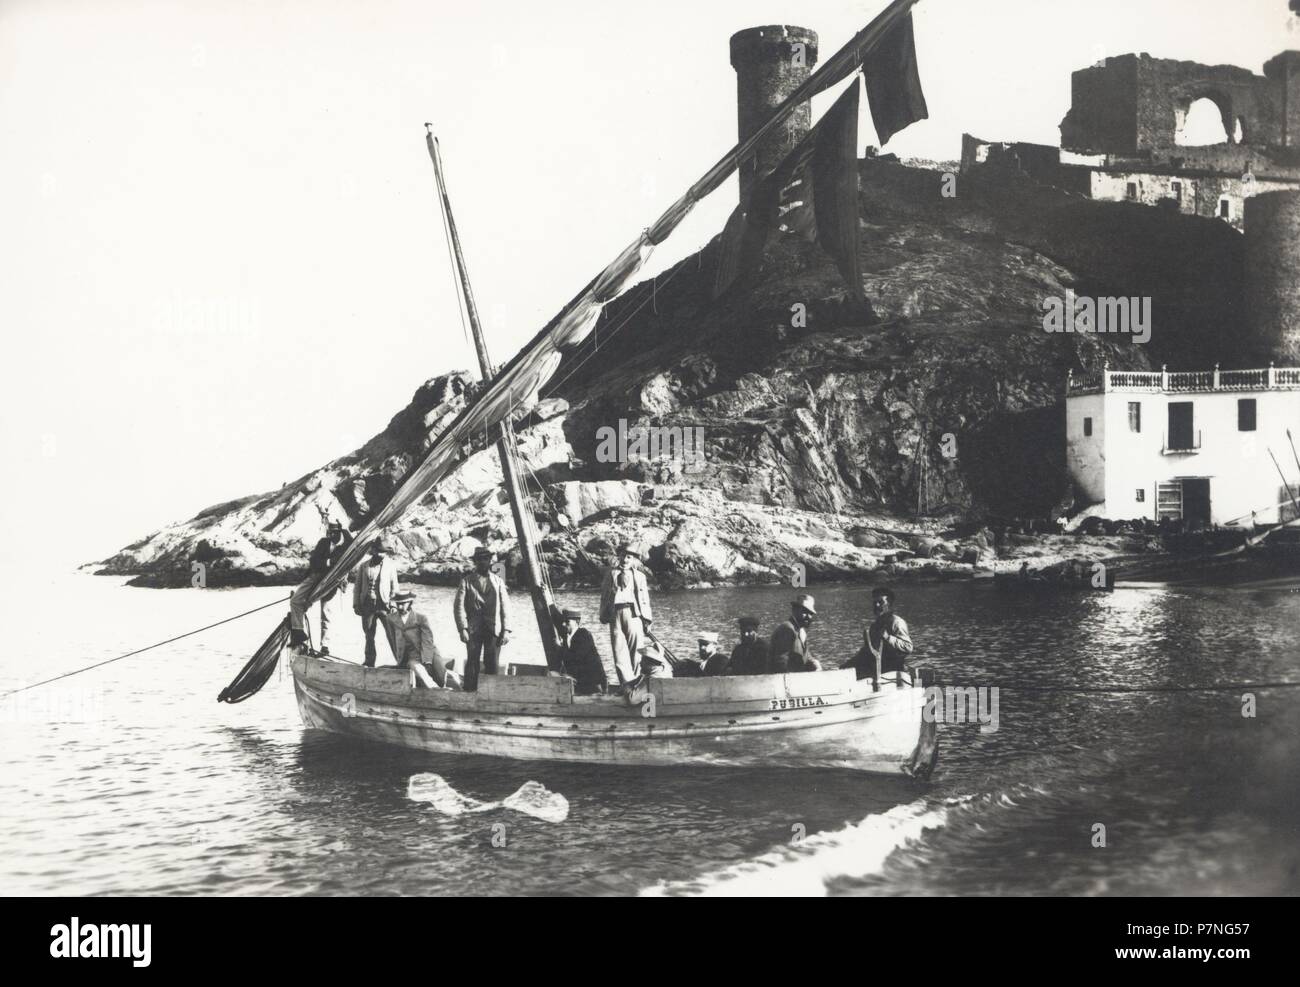 Catalunya. Girona. Llagut, barca de vela tradicional catalana, en la playa de Tossa de Mar. Años 1950. Stock Photo